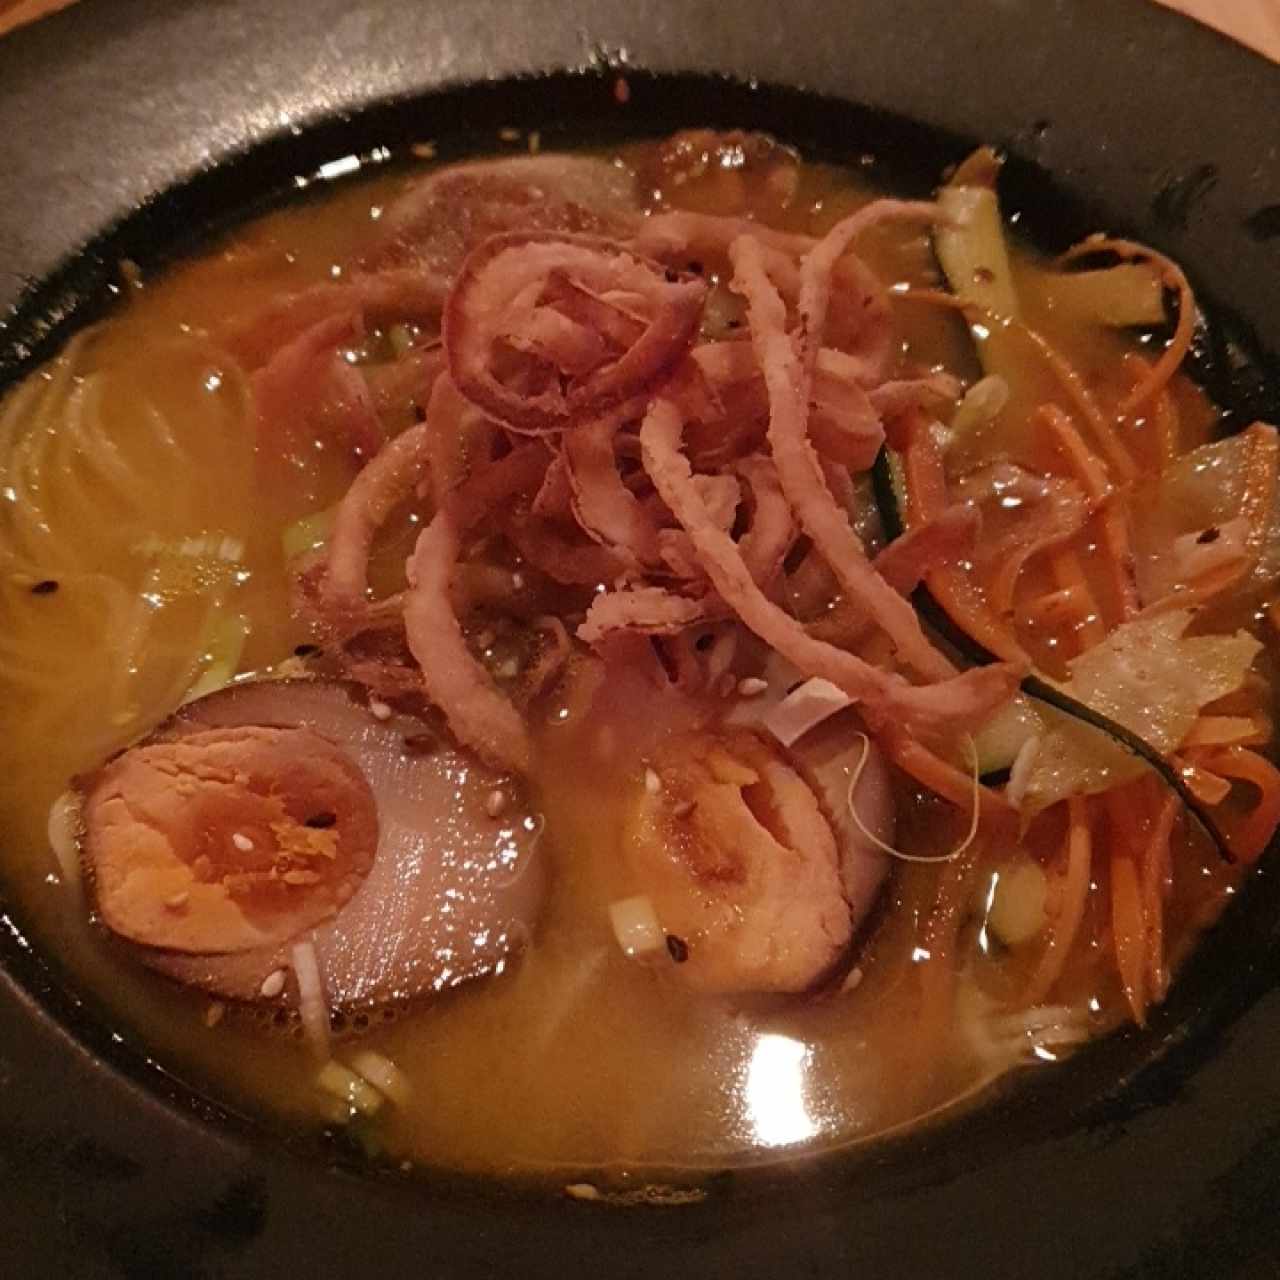 Sopa Oriental